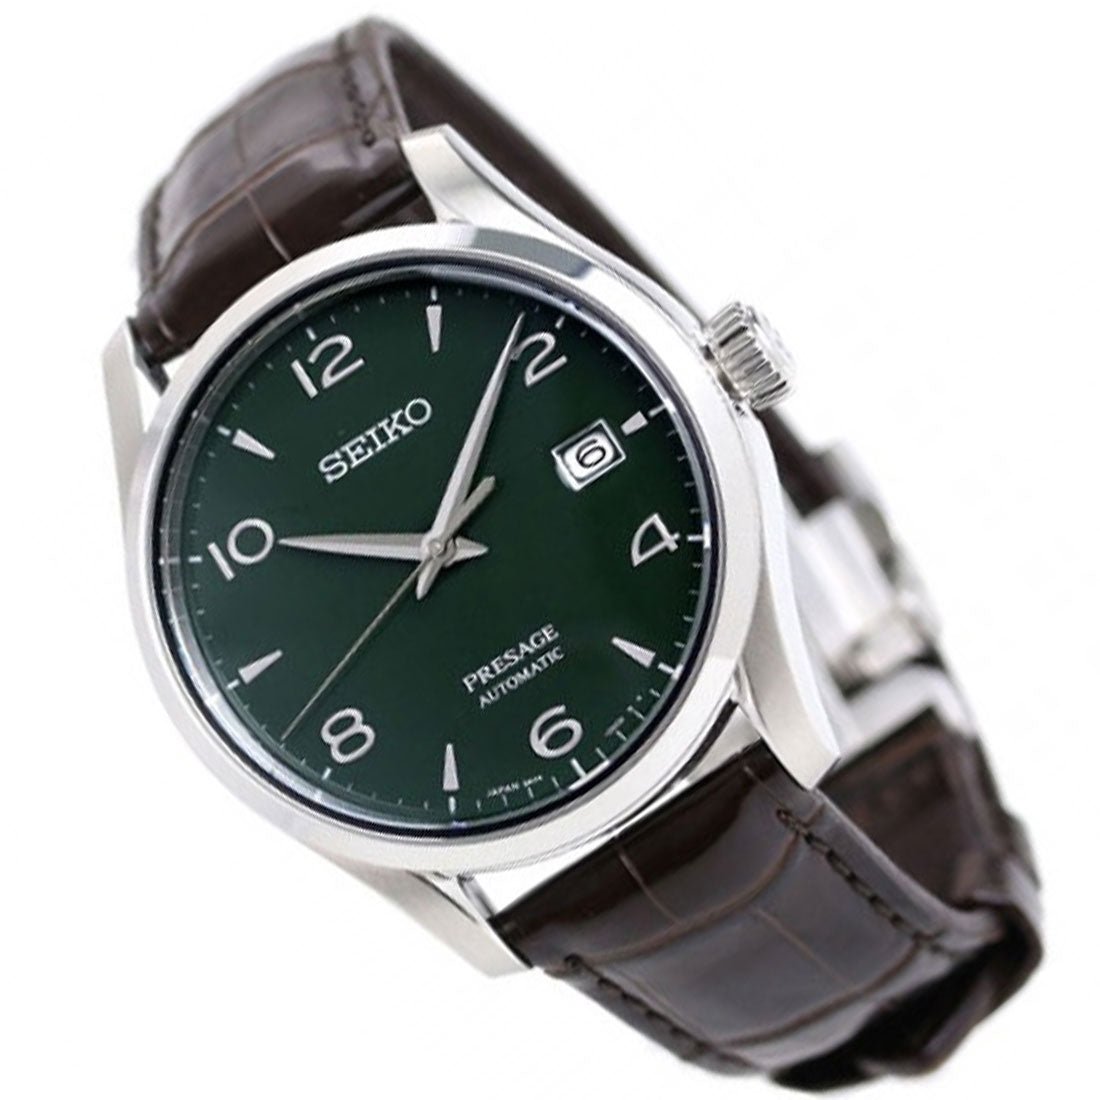 Seiko Presage Automatic Green Enamel JDM Watch SARX063 -Seiko